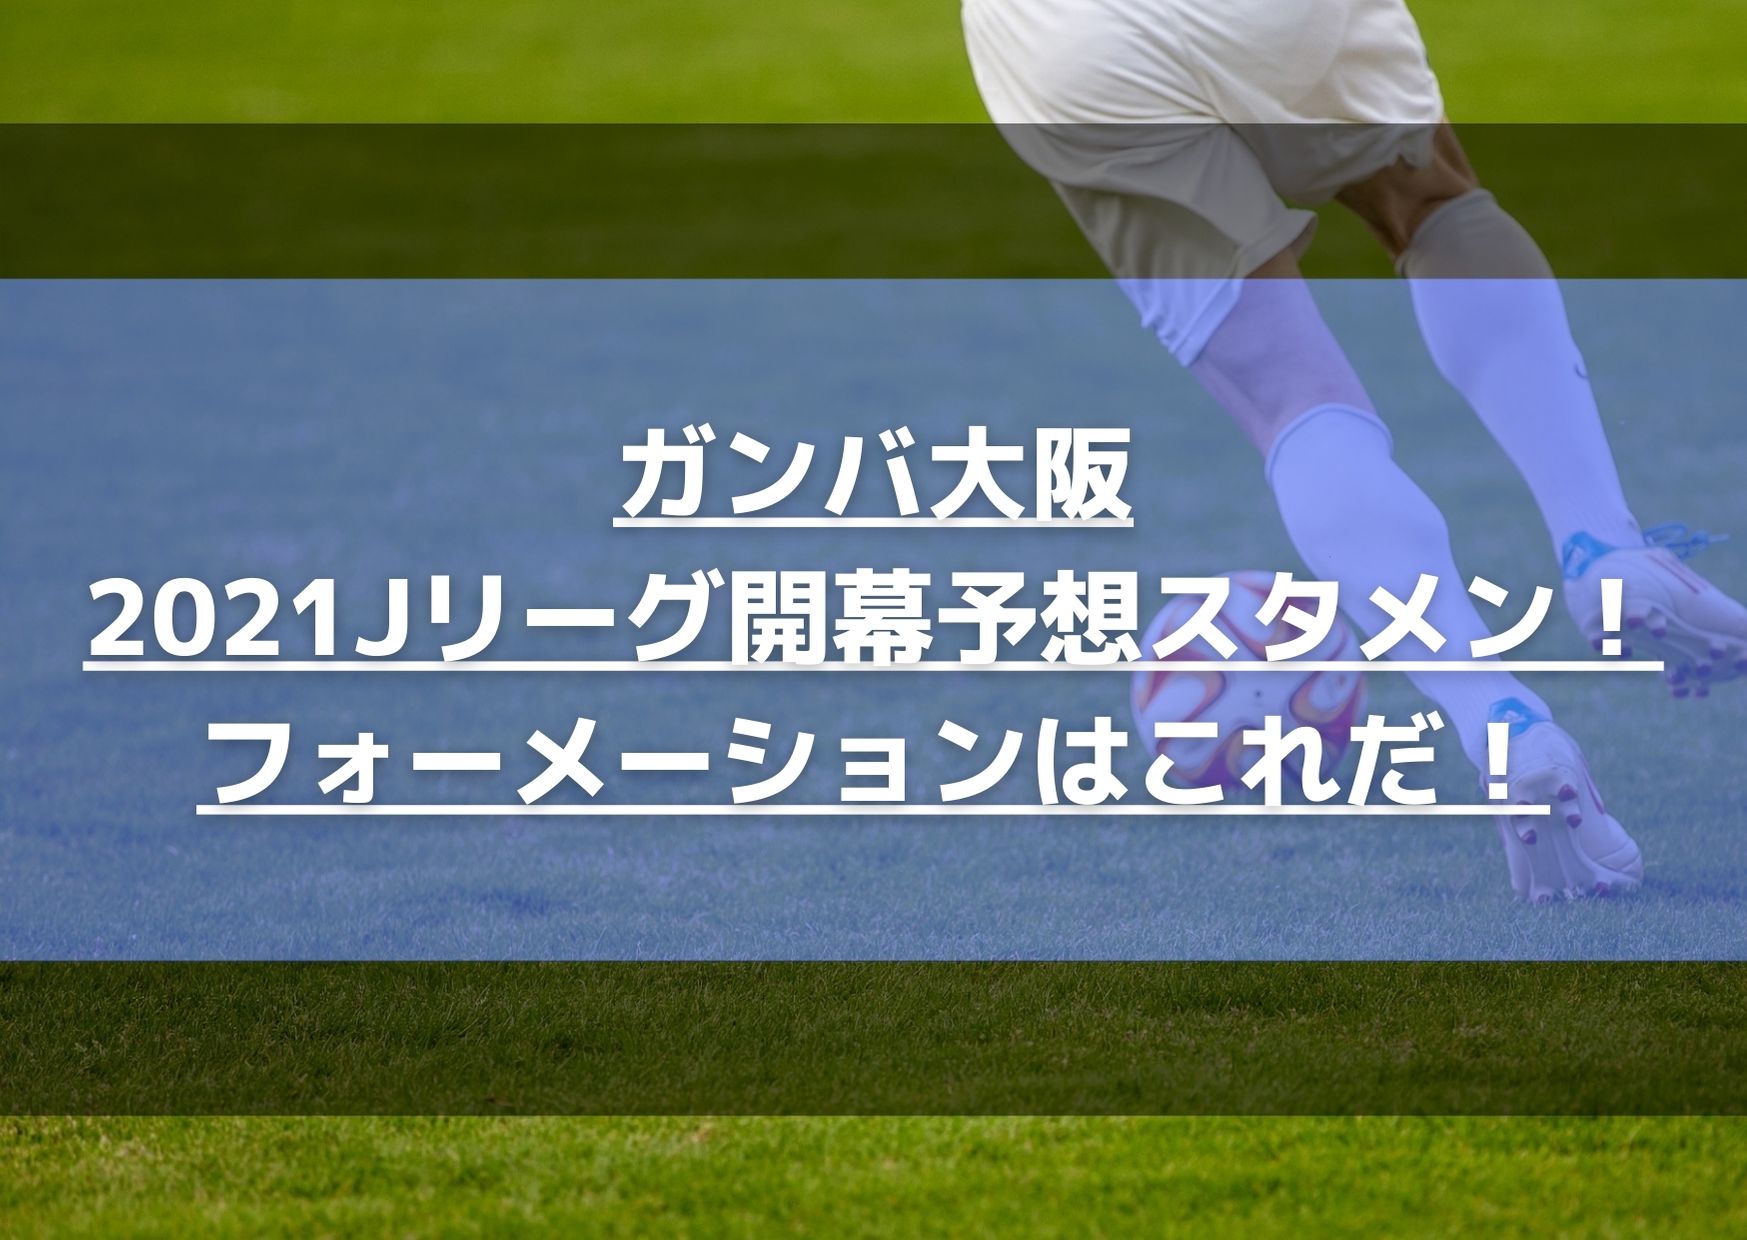 ガンバ大阪 2021Jリーグ開幕予想スタメン！ フォーメーションはこれだ！ (1)